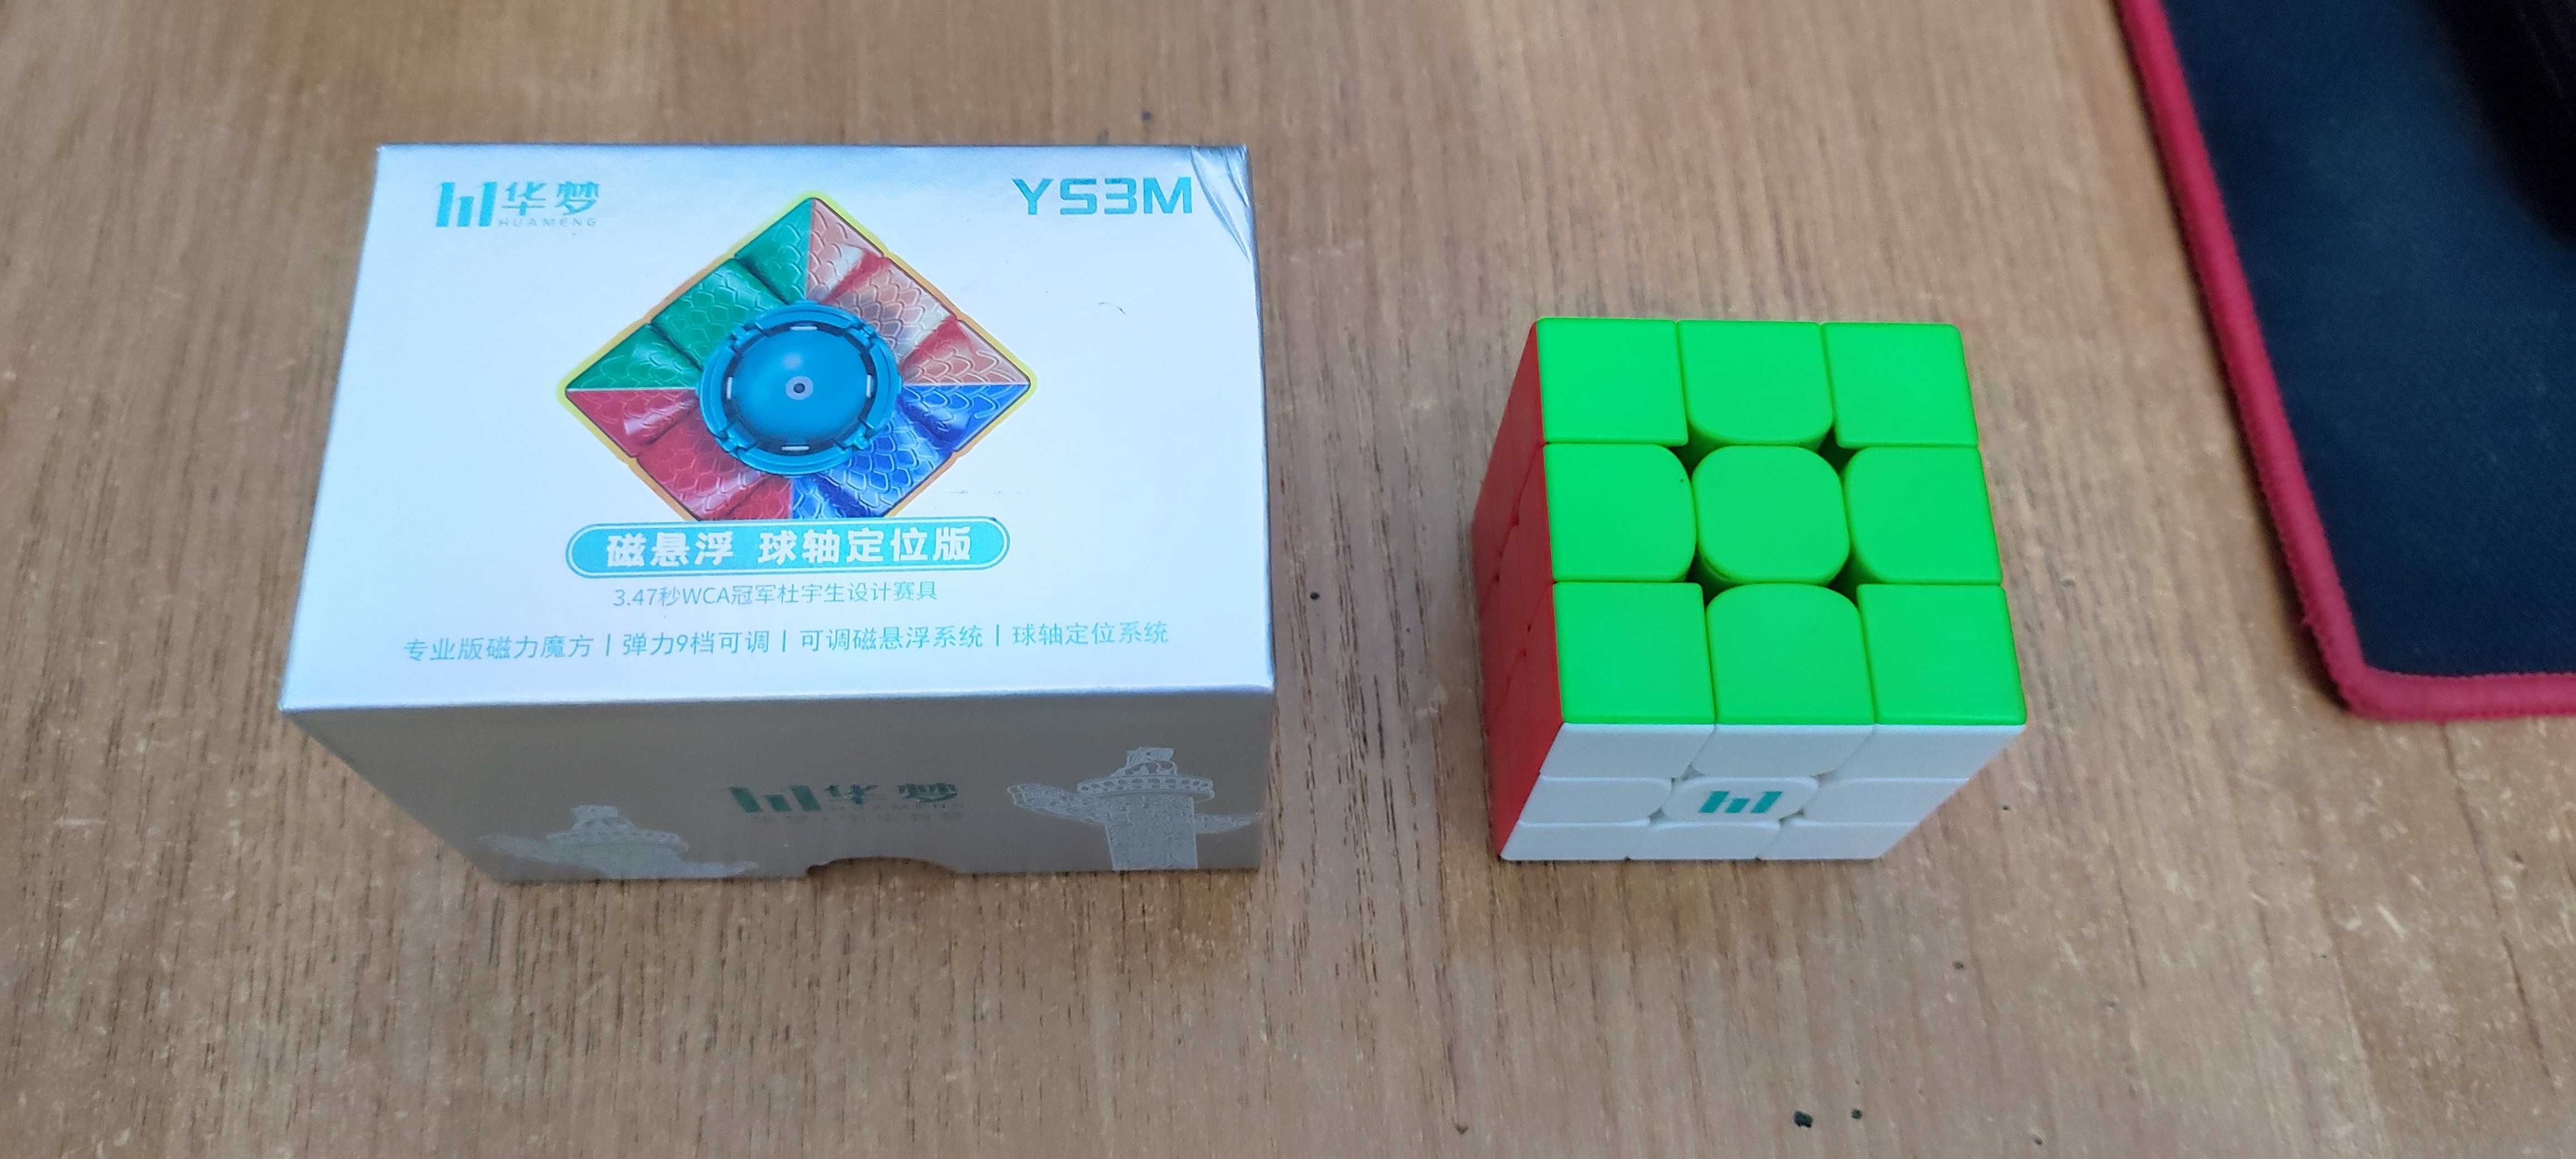 кубик Рубика профессиональный MoYu HuaMeng YS3M Magnetic core + Maglev